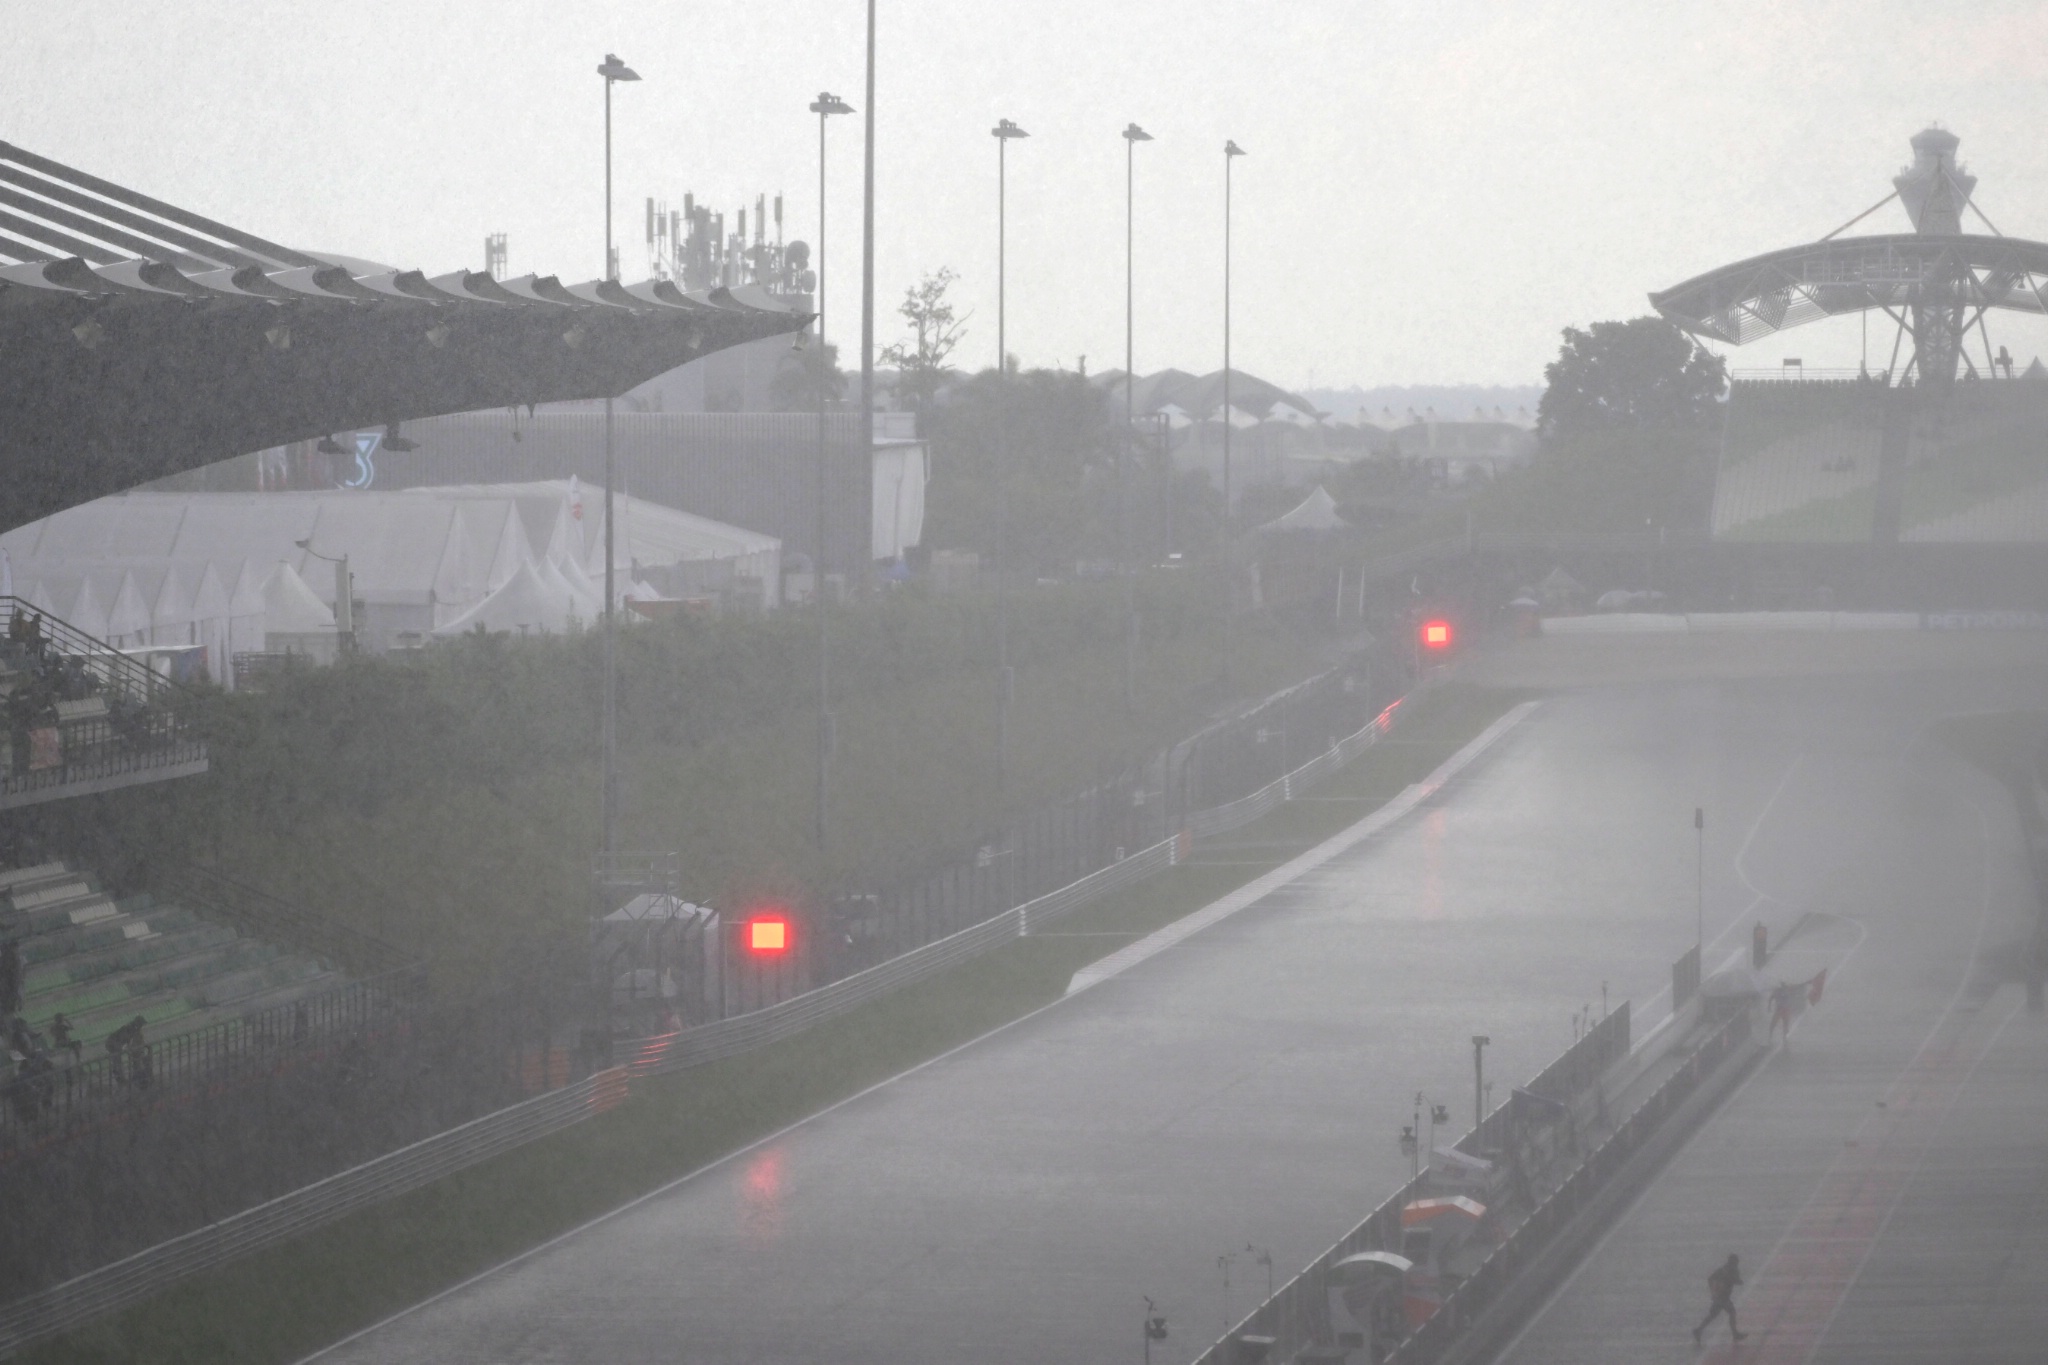 Regen, MotoGP, Maleisische MotoGP, 21 oktober